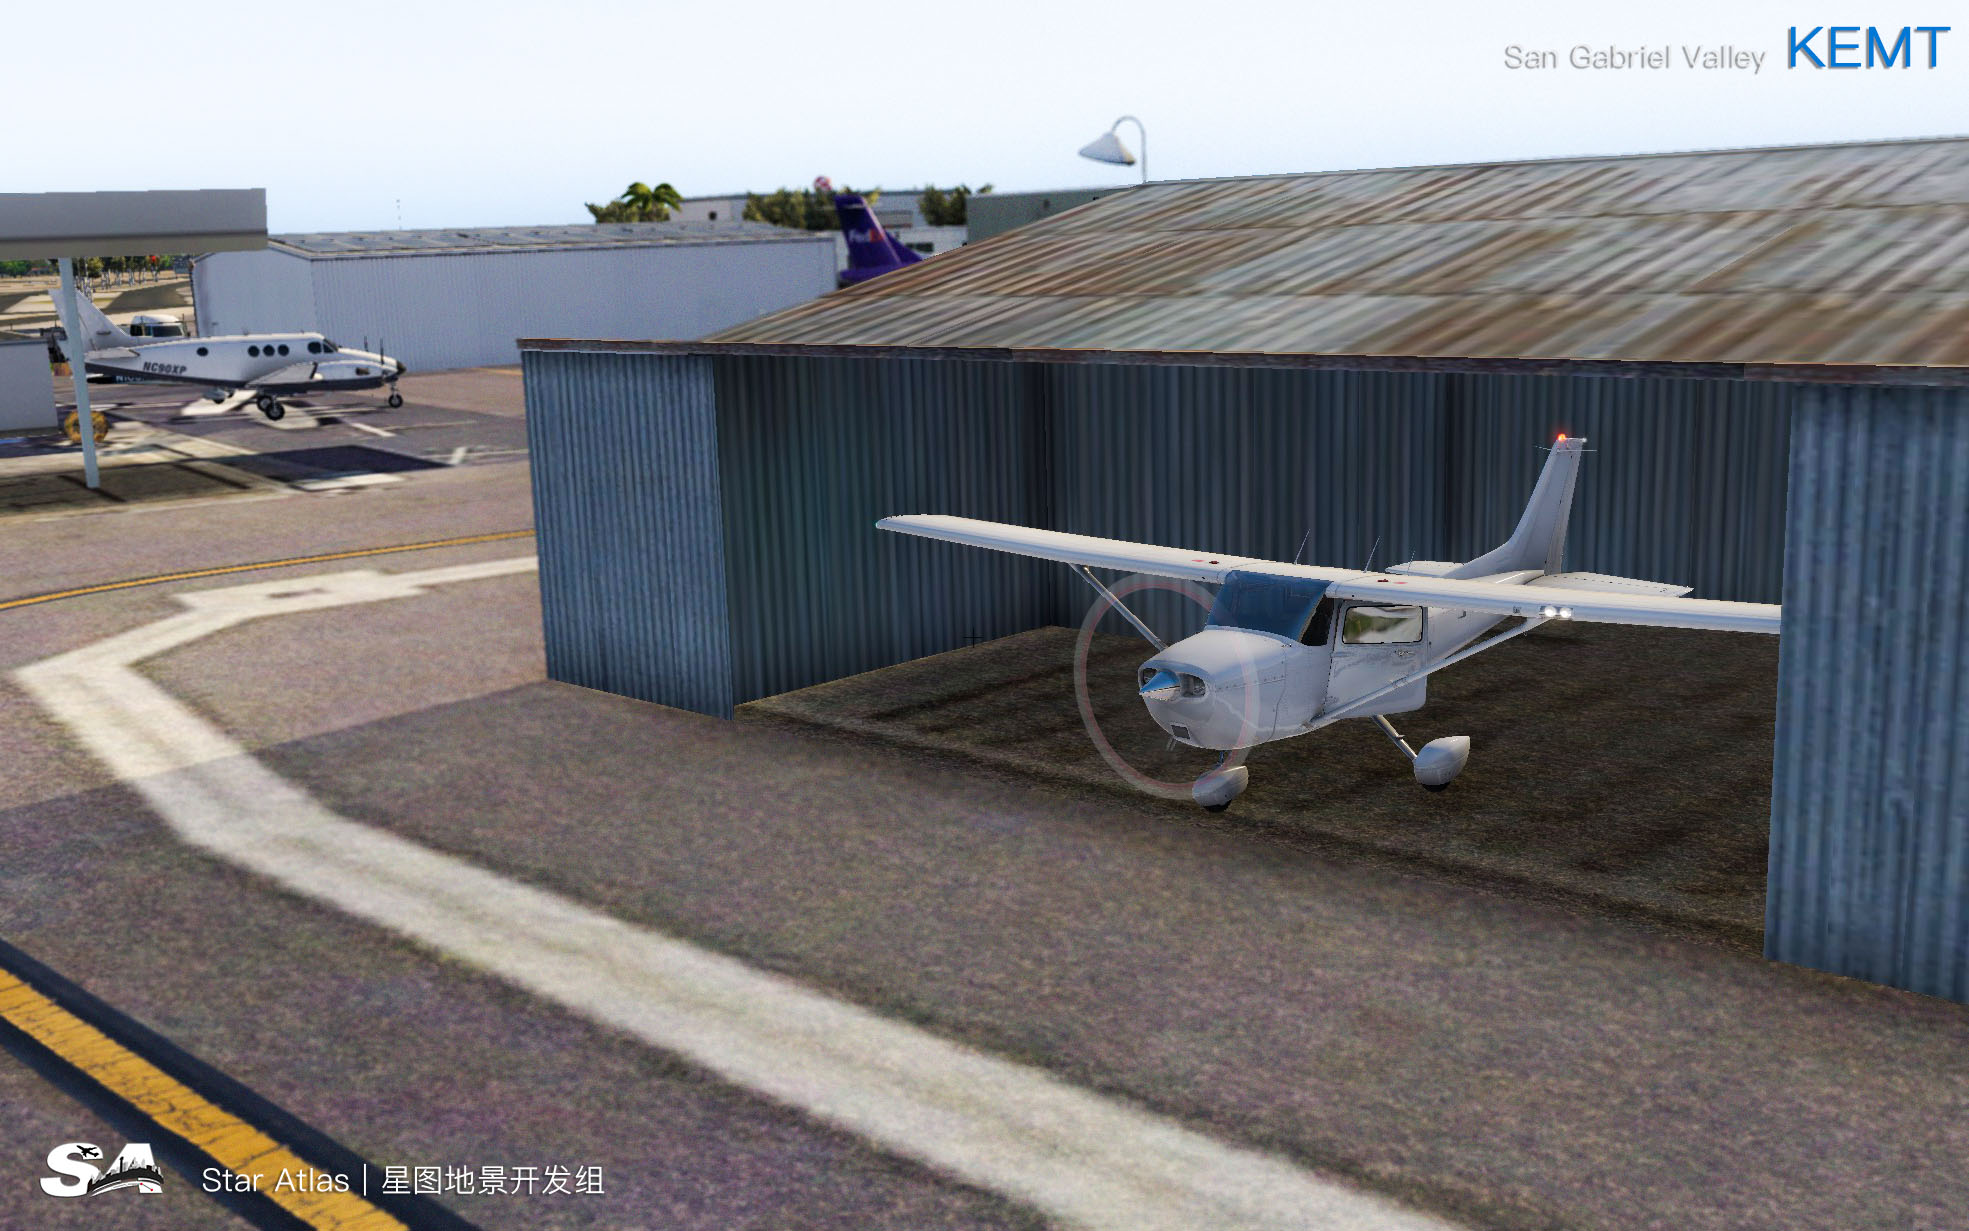 【X-Plane】KEMT-圣盖博谷机场 HD 1.0-4380 